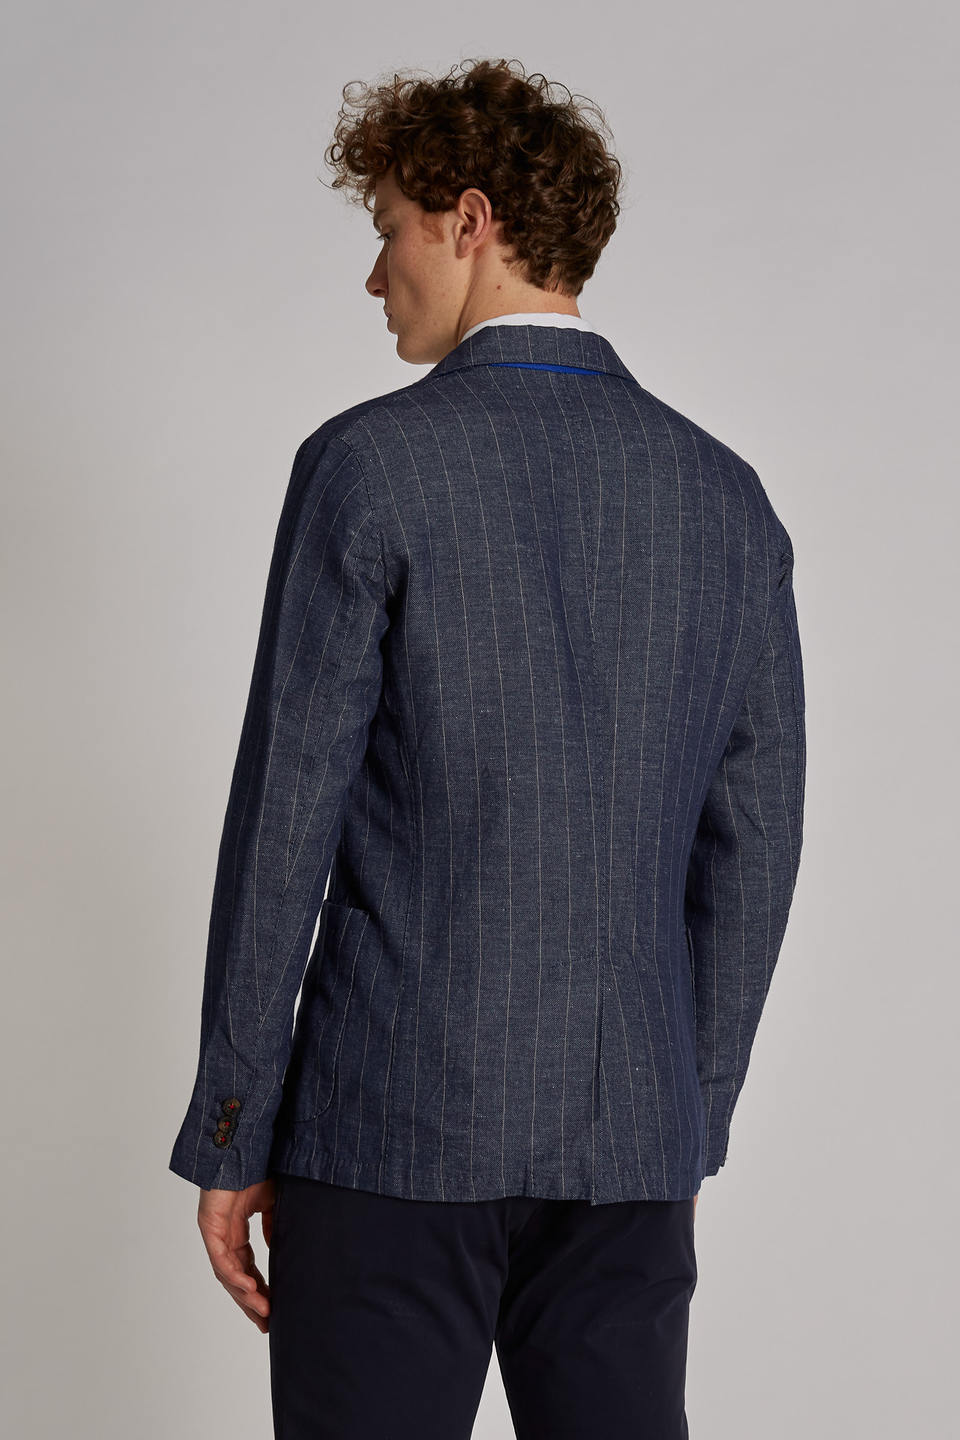 Chaqueta de hombre de mezcla de algodón y lino, modelo blazer, corte regular - La Martina - Official Online Shop